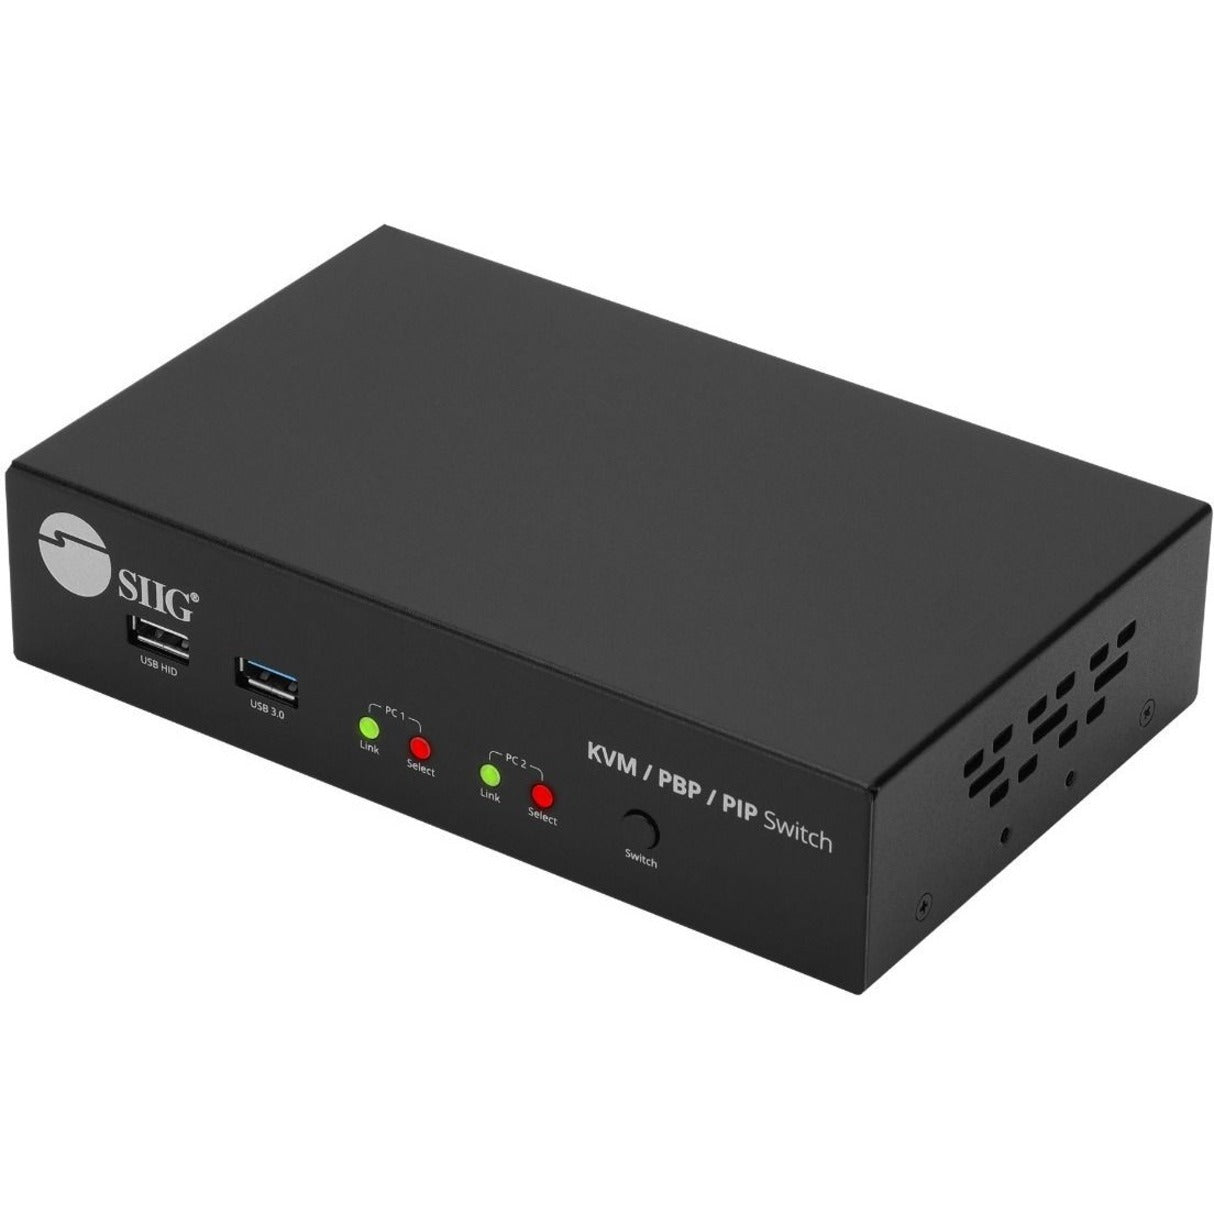 سيج CE-KV0G11-S1 2-بورت 4K HDMI مفتاح تبديل KVM مع PBP تجوال الماوس و PIP، سد واللعب